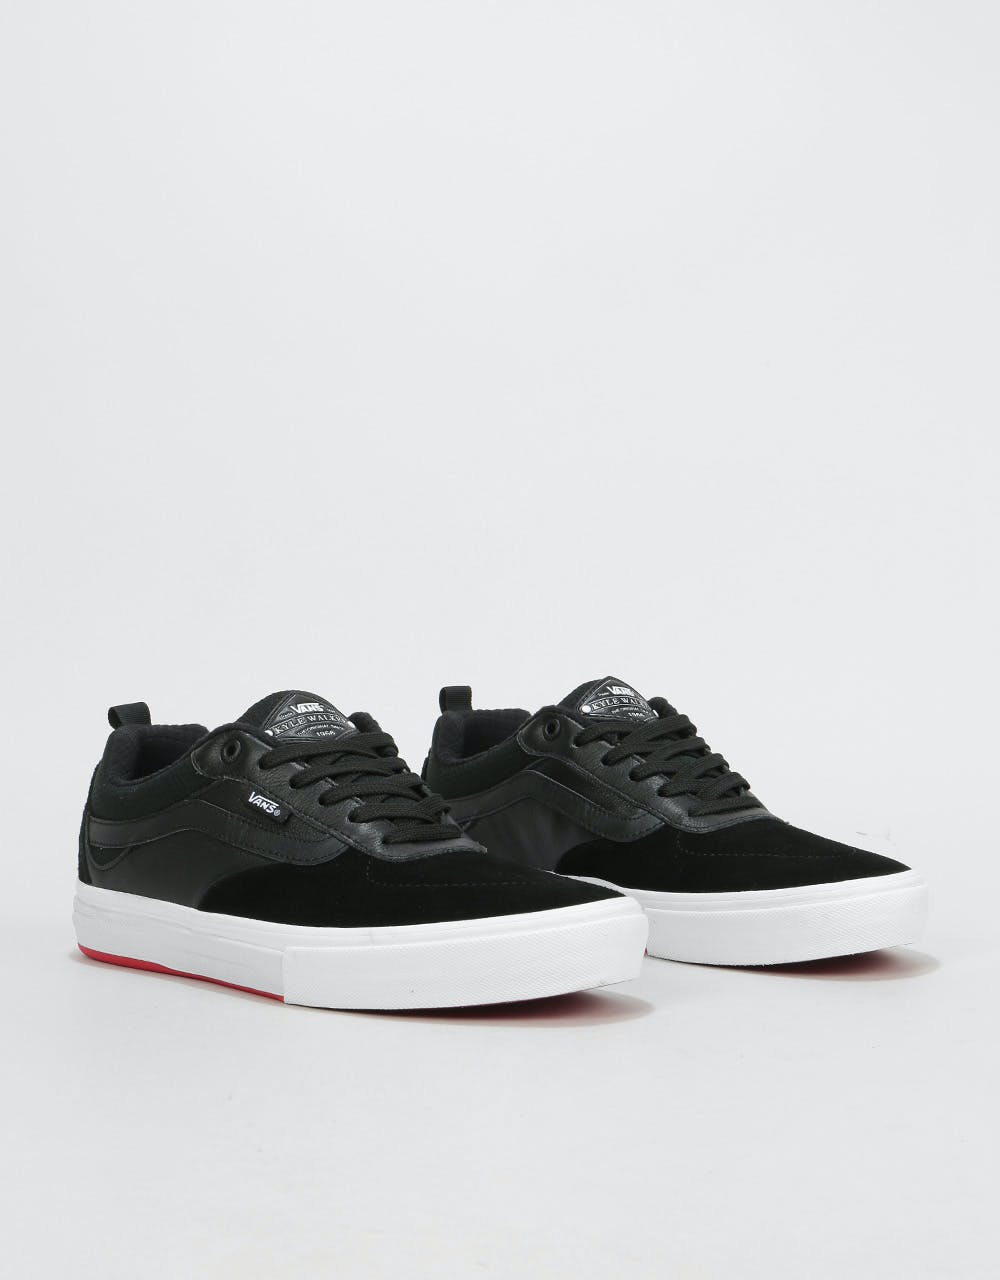 Vans Kyle Walker Pro Skate Shoes - Black/Red